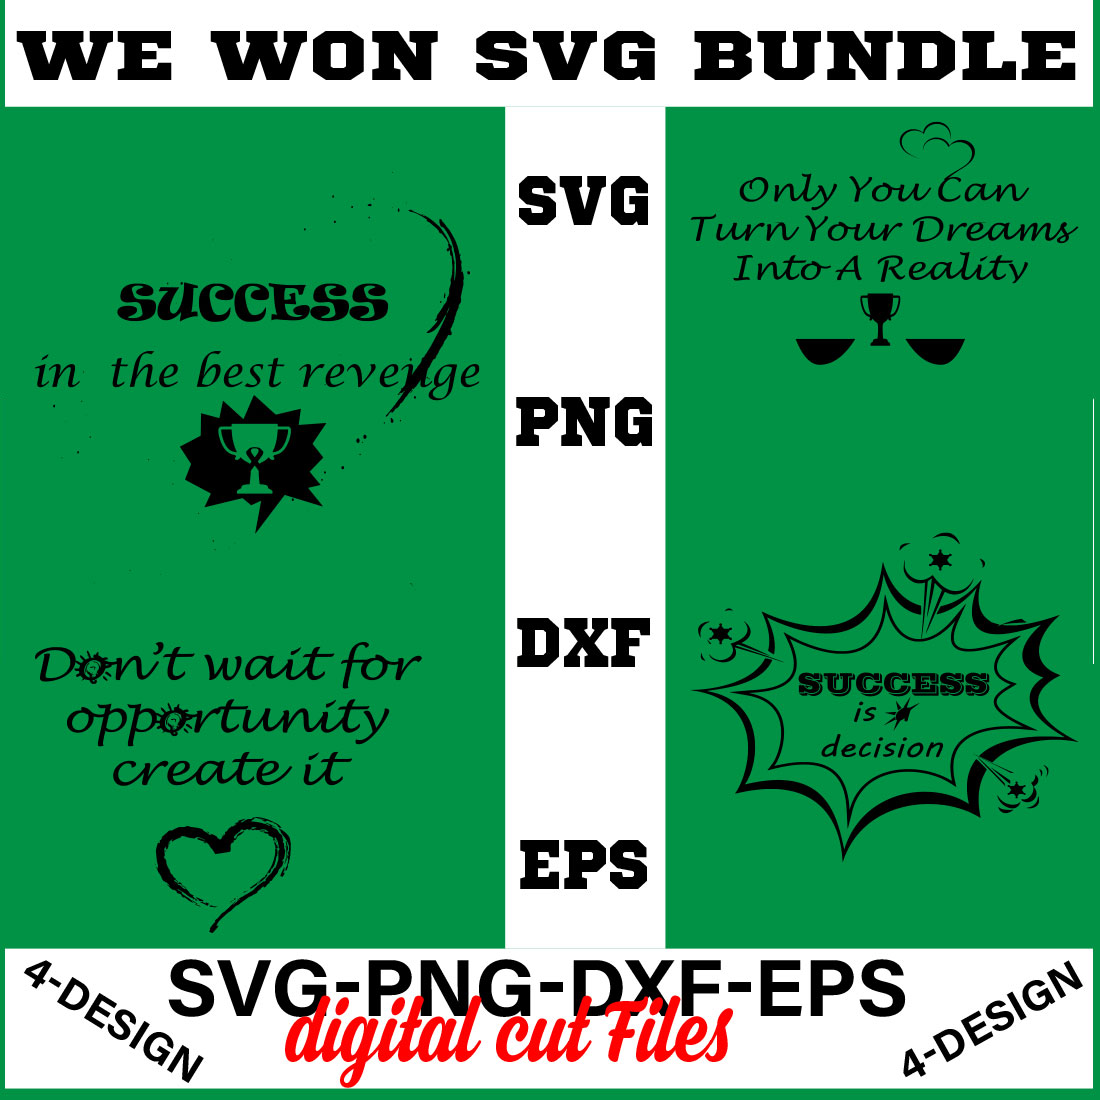 We Won SVG T-shirt Design Bundle Volume-07 cover image.